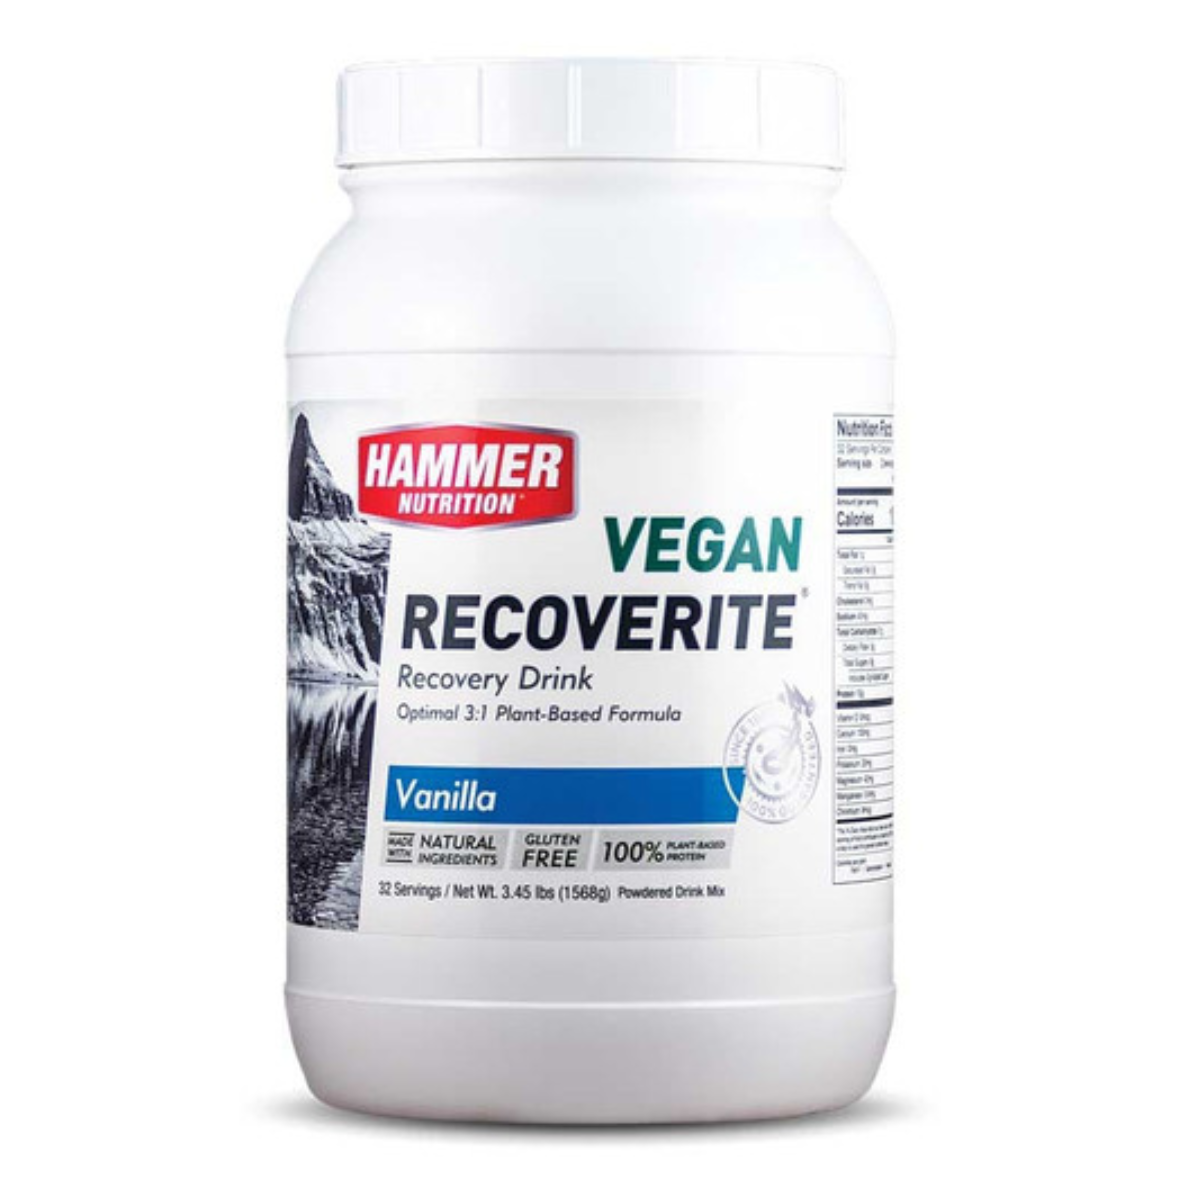 Hammer Nutrition - Vegan Recoverite - Vanilla